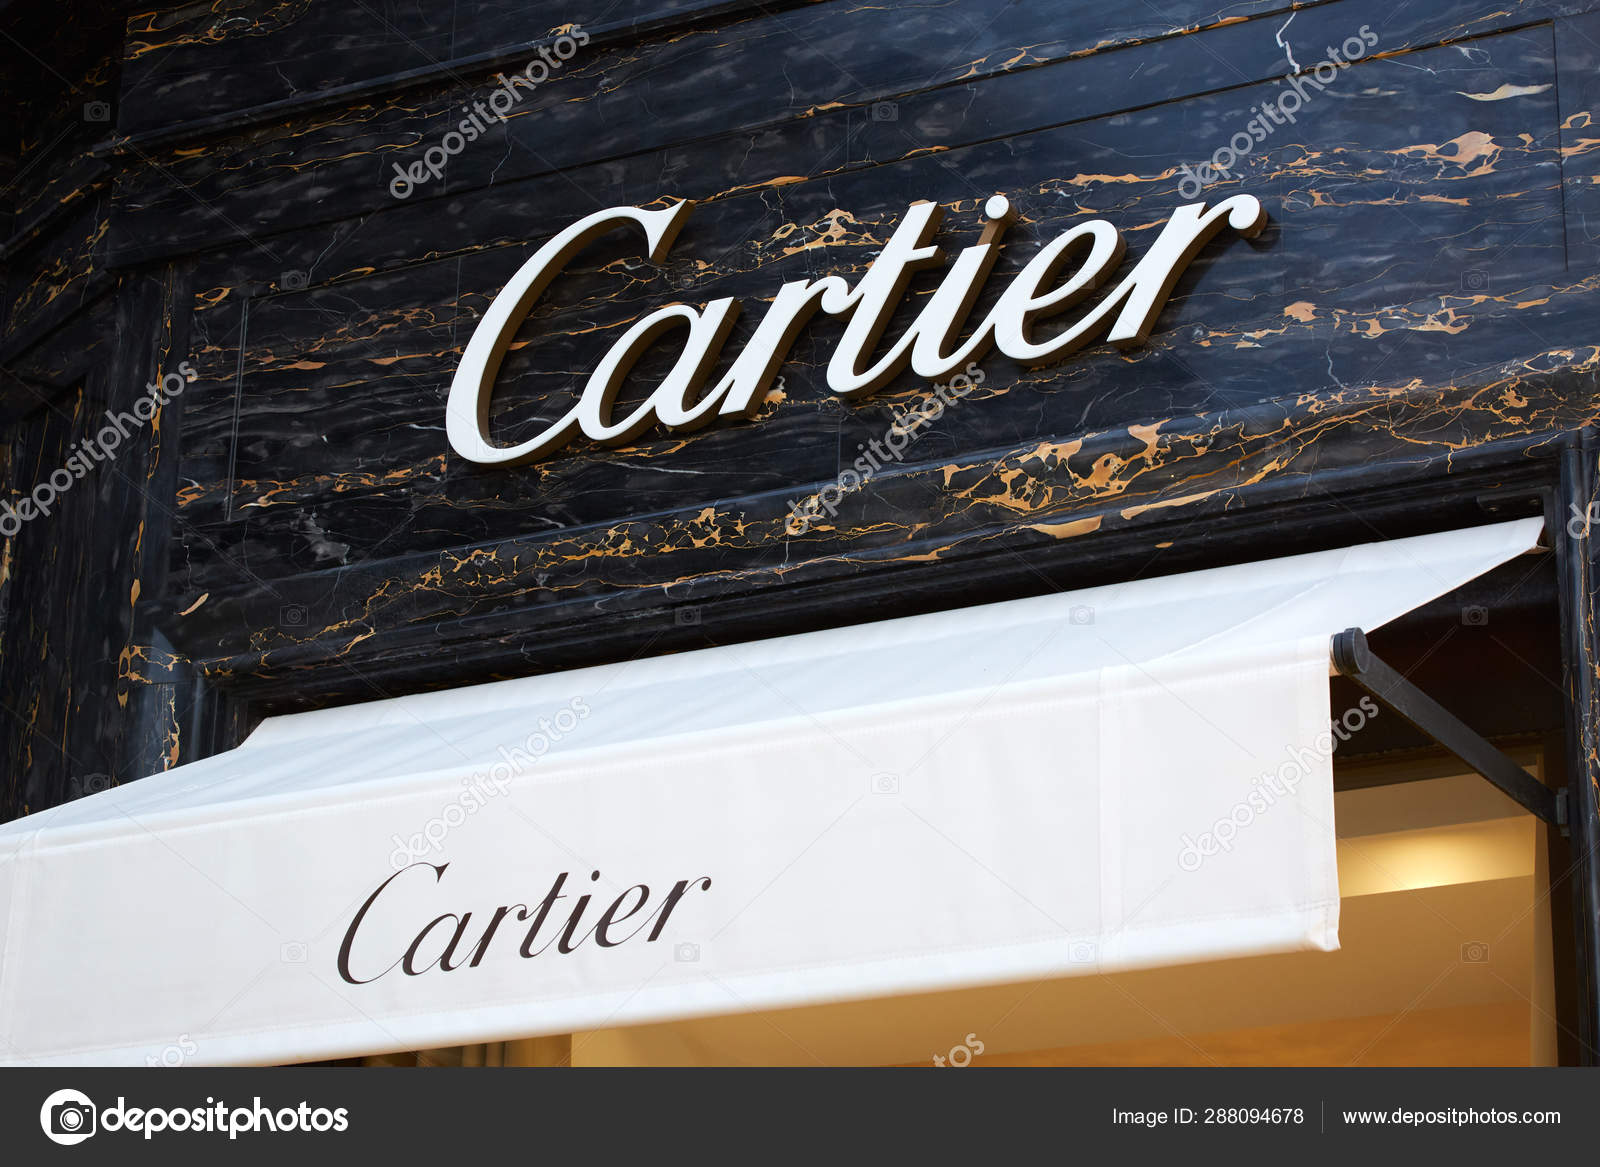 cartier jewelry stock